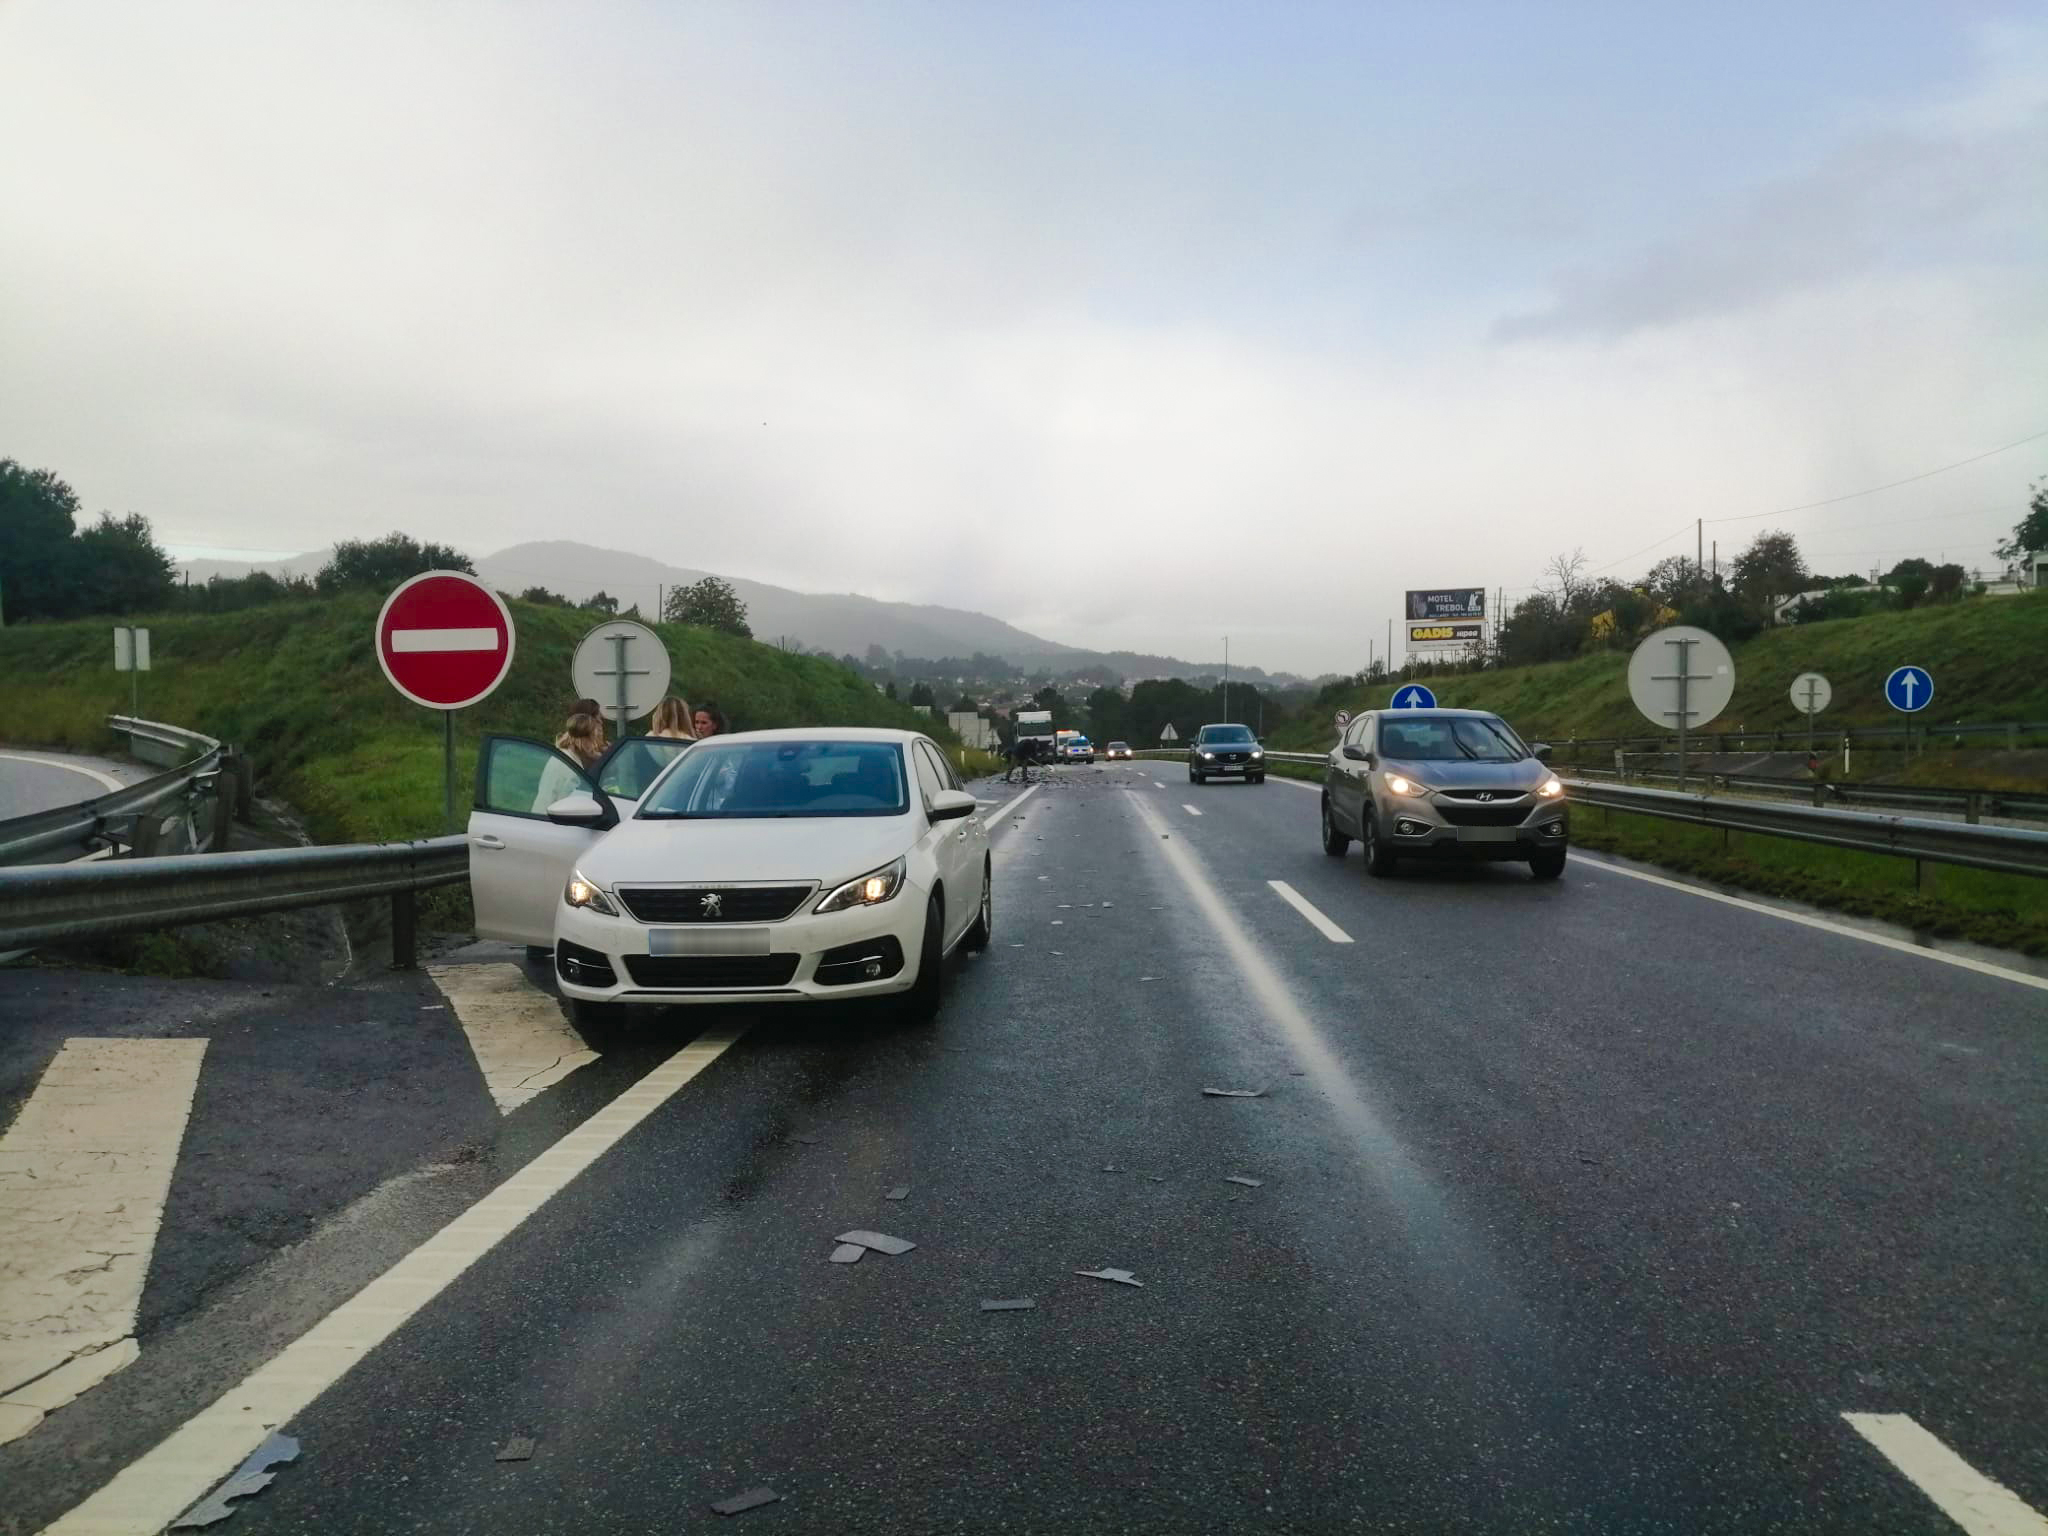 70 vehículos afectados por la pérdida de carga de un camión, en el puente internacional de Valença a Galicia